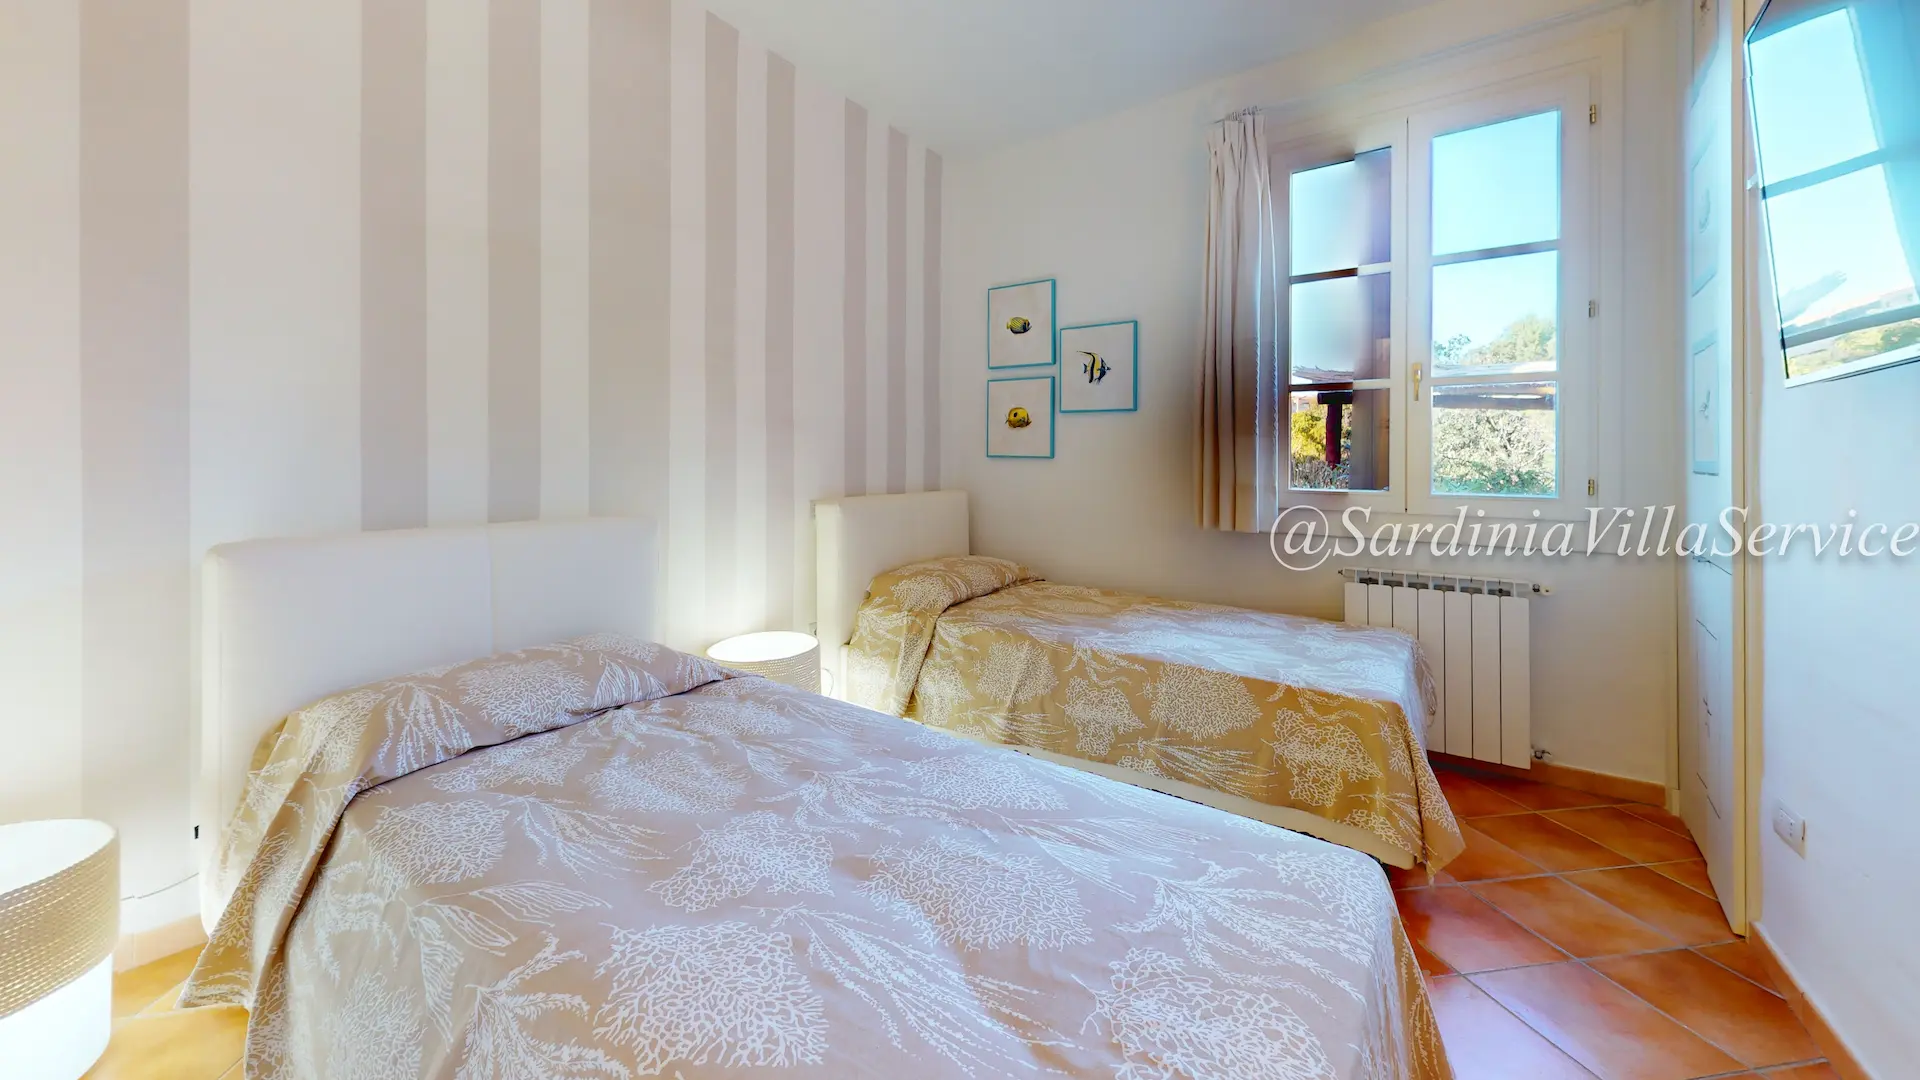 Sardinia Villa Service Appartamento Ricco 2 Bedroom(2)